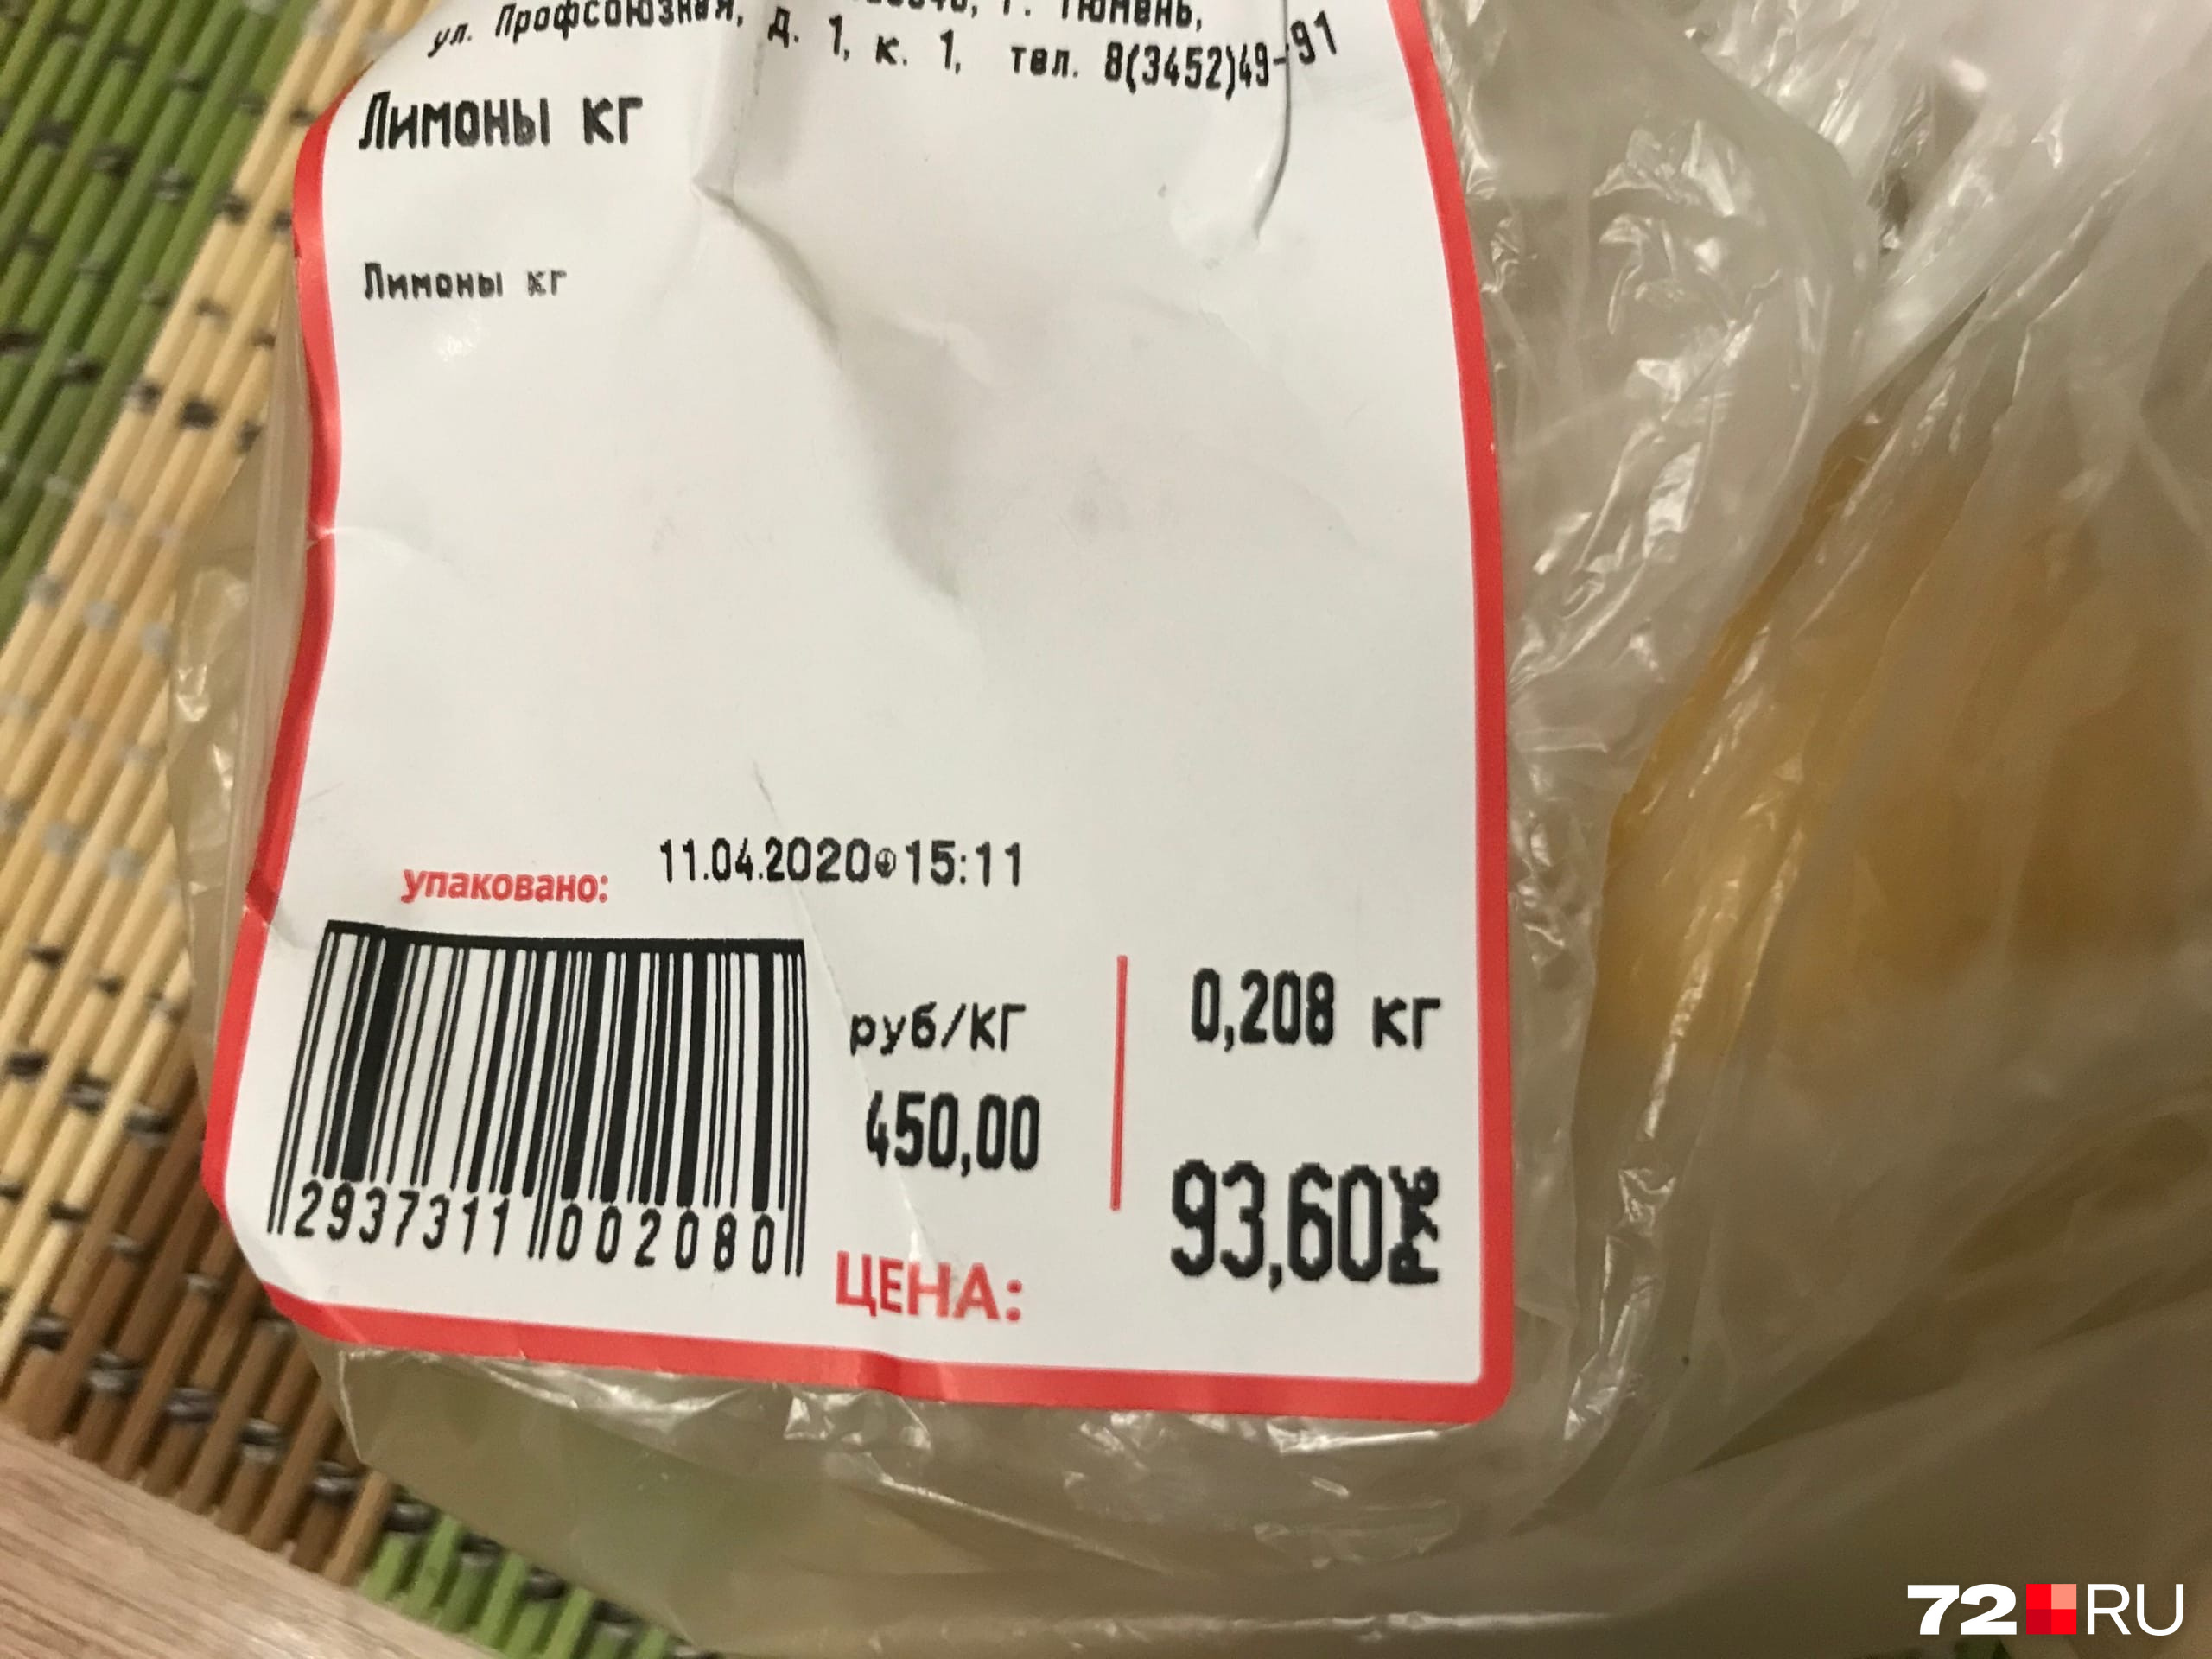 Раньше на 100 рублей можно было купить едва ли не килограмм лимонов, а сейчас всего две штуки весом в 200 граммов